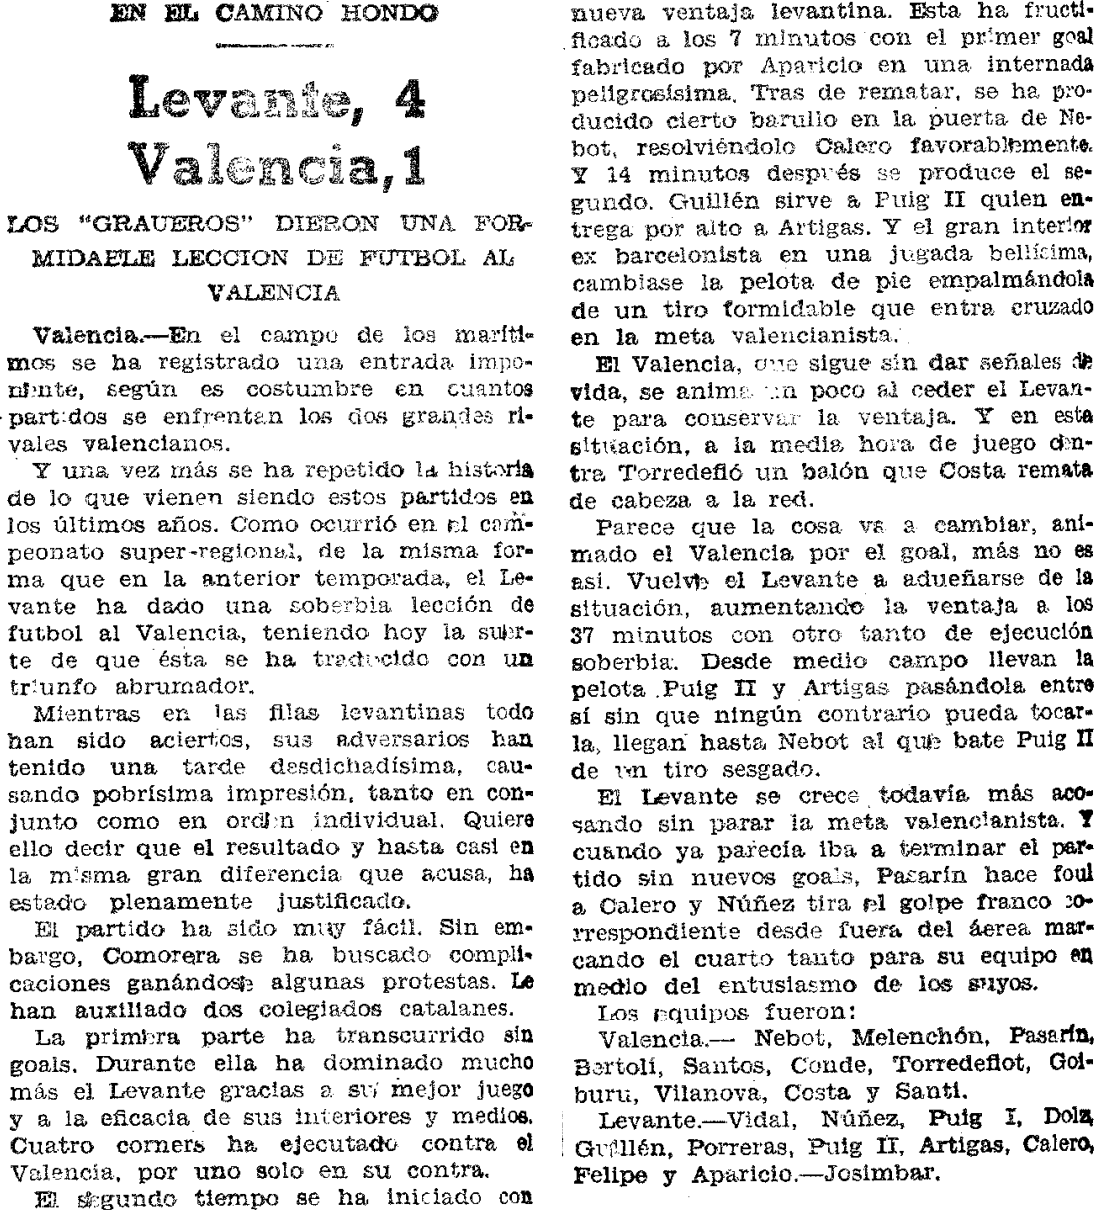 1935.05.19 (19 мая 1935), Леванте - Валенсия, 4-1 (2).png